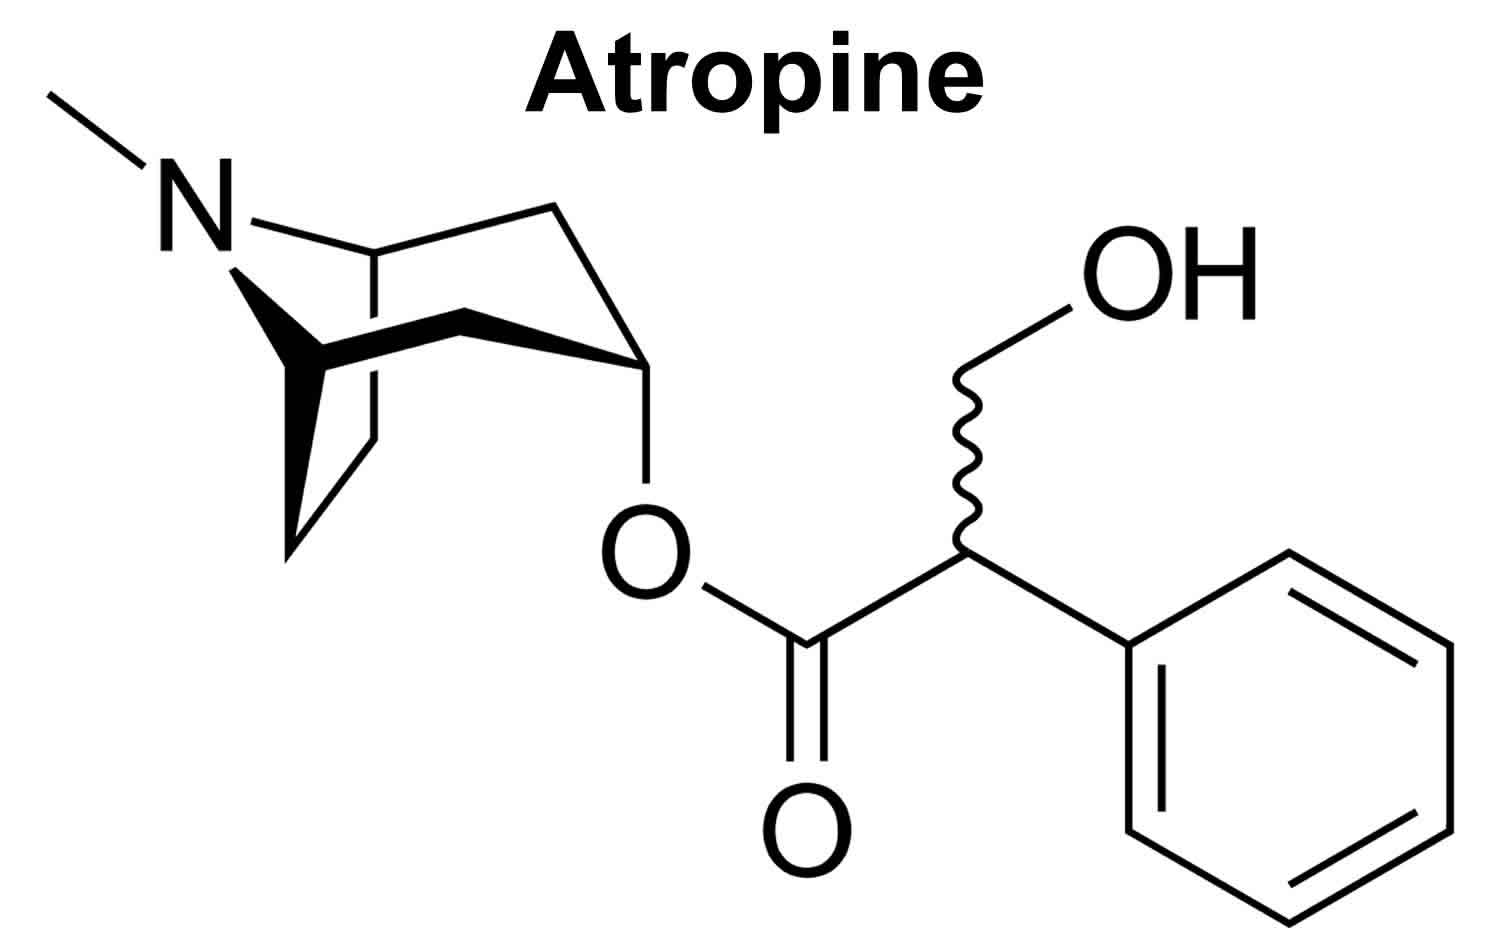 atropine antidote